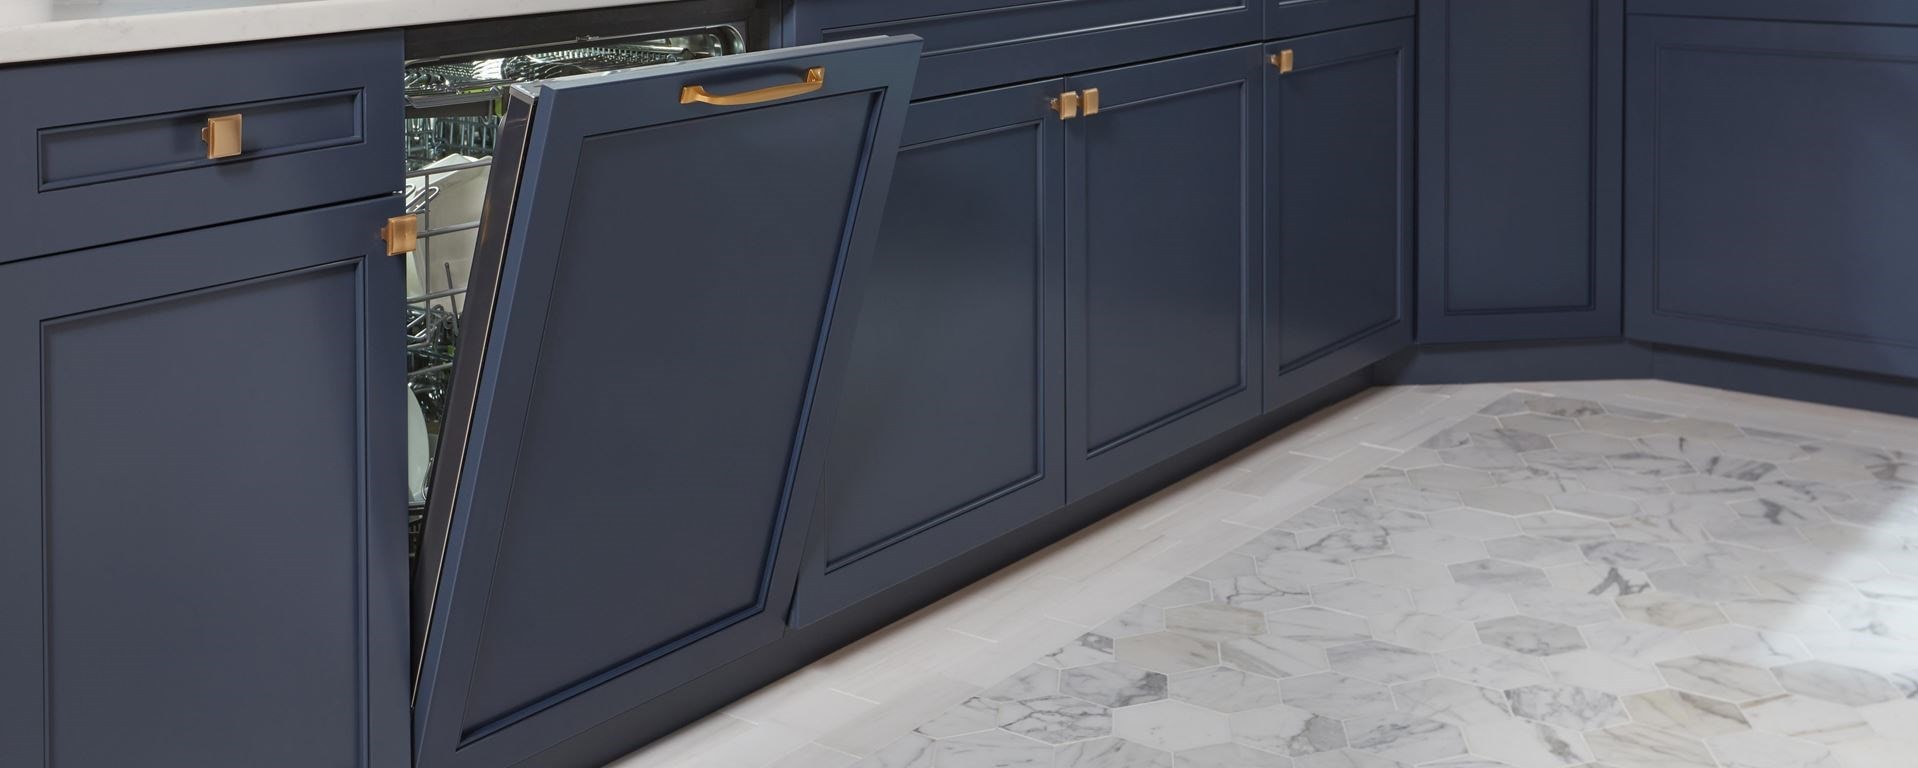 Lavavajillas incorporado Cove de 24” (DW2450WS) con panel personalizado para combinar con los gabinetes de la cocina